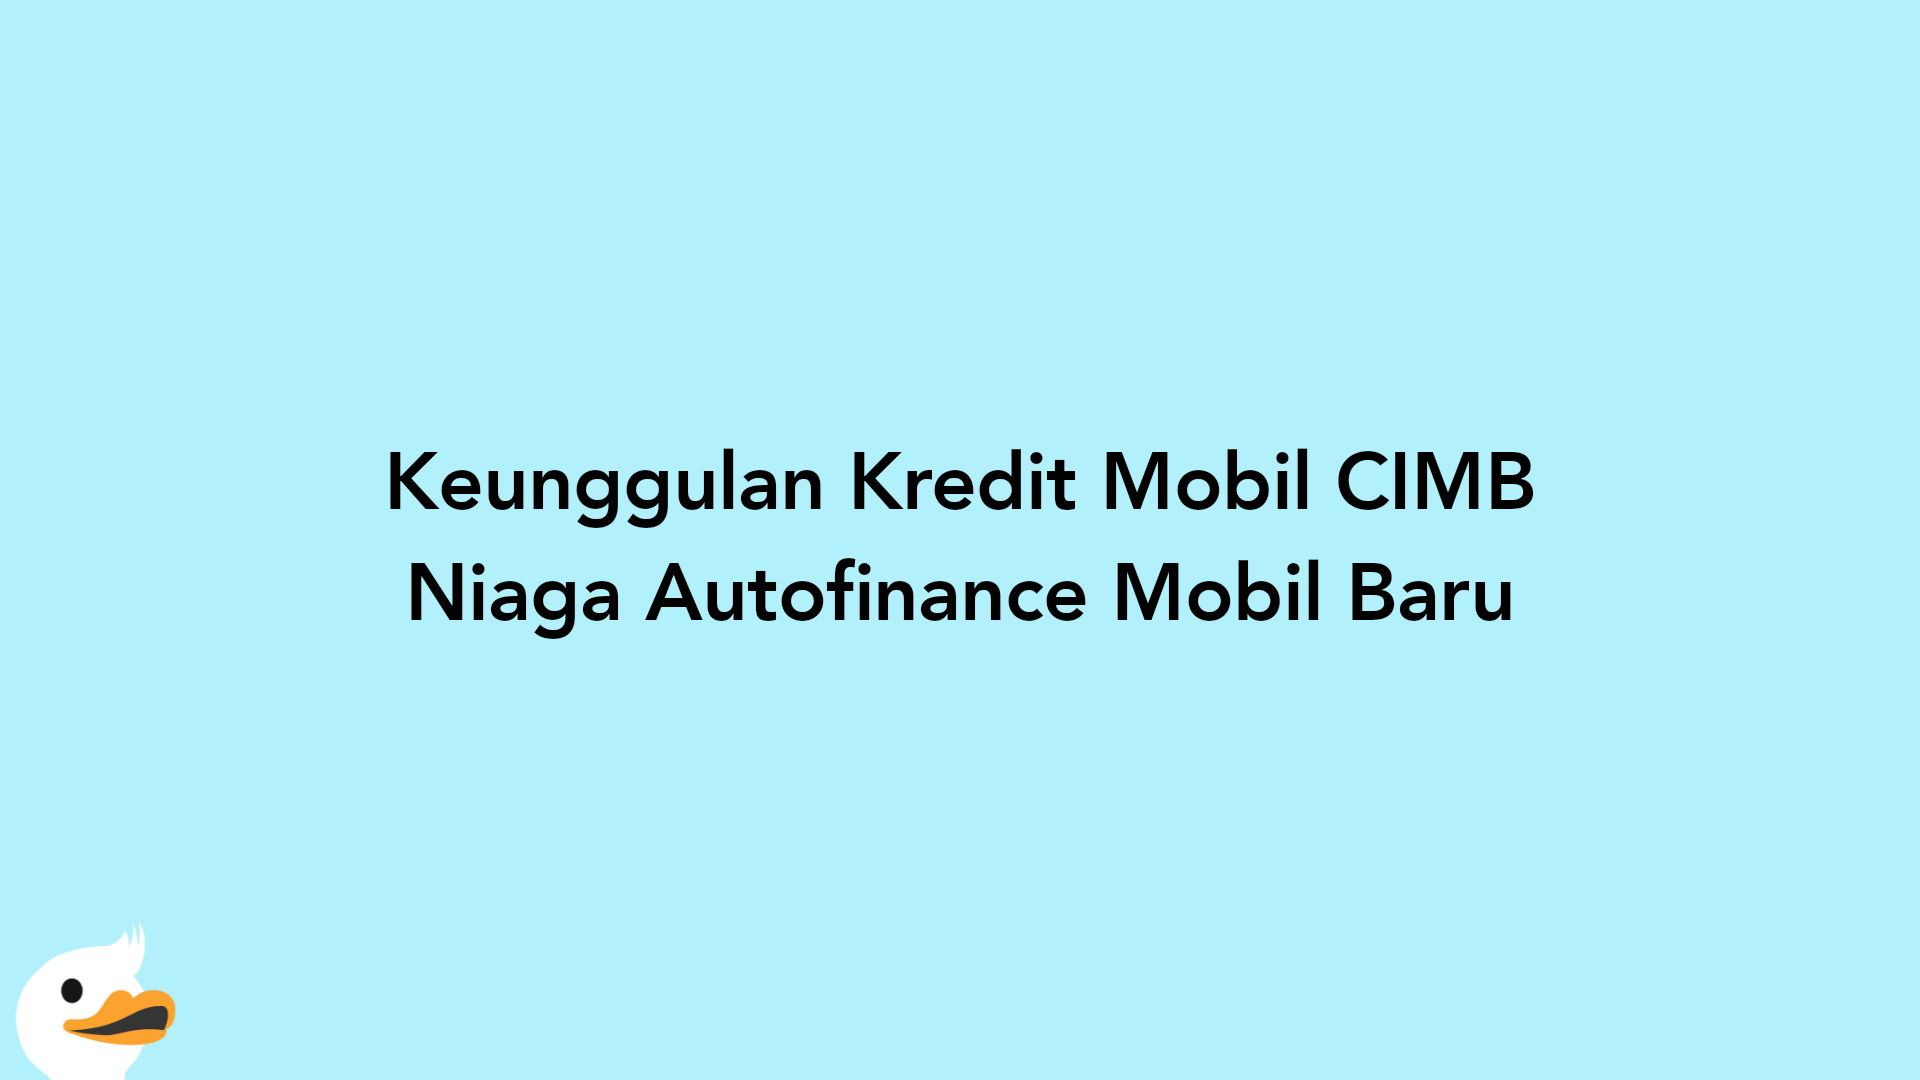 Keunggulan Kredit Mobil CIMB Niaga Autofinance Mobil Baru